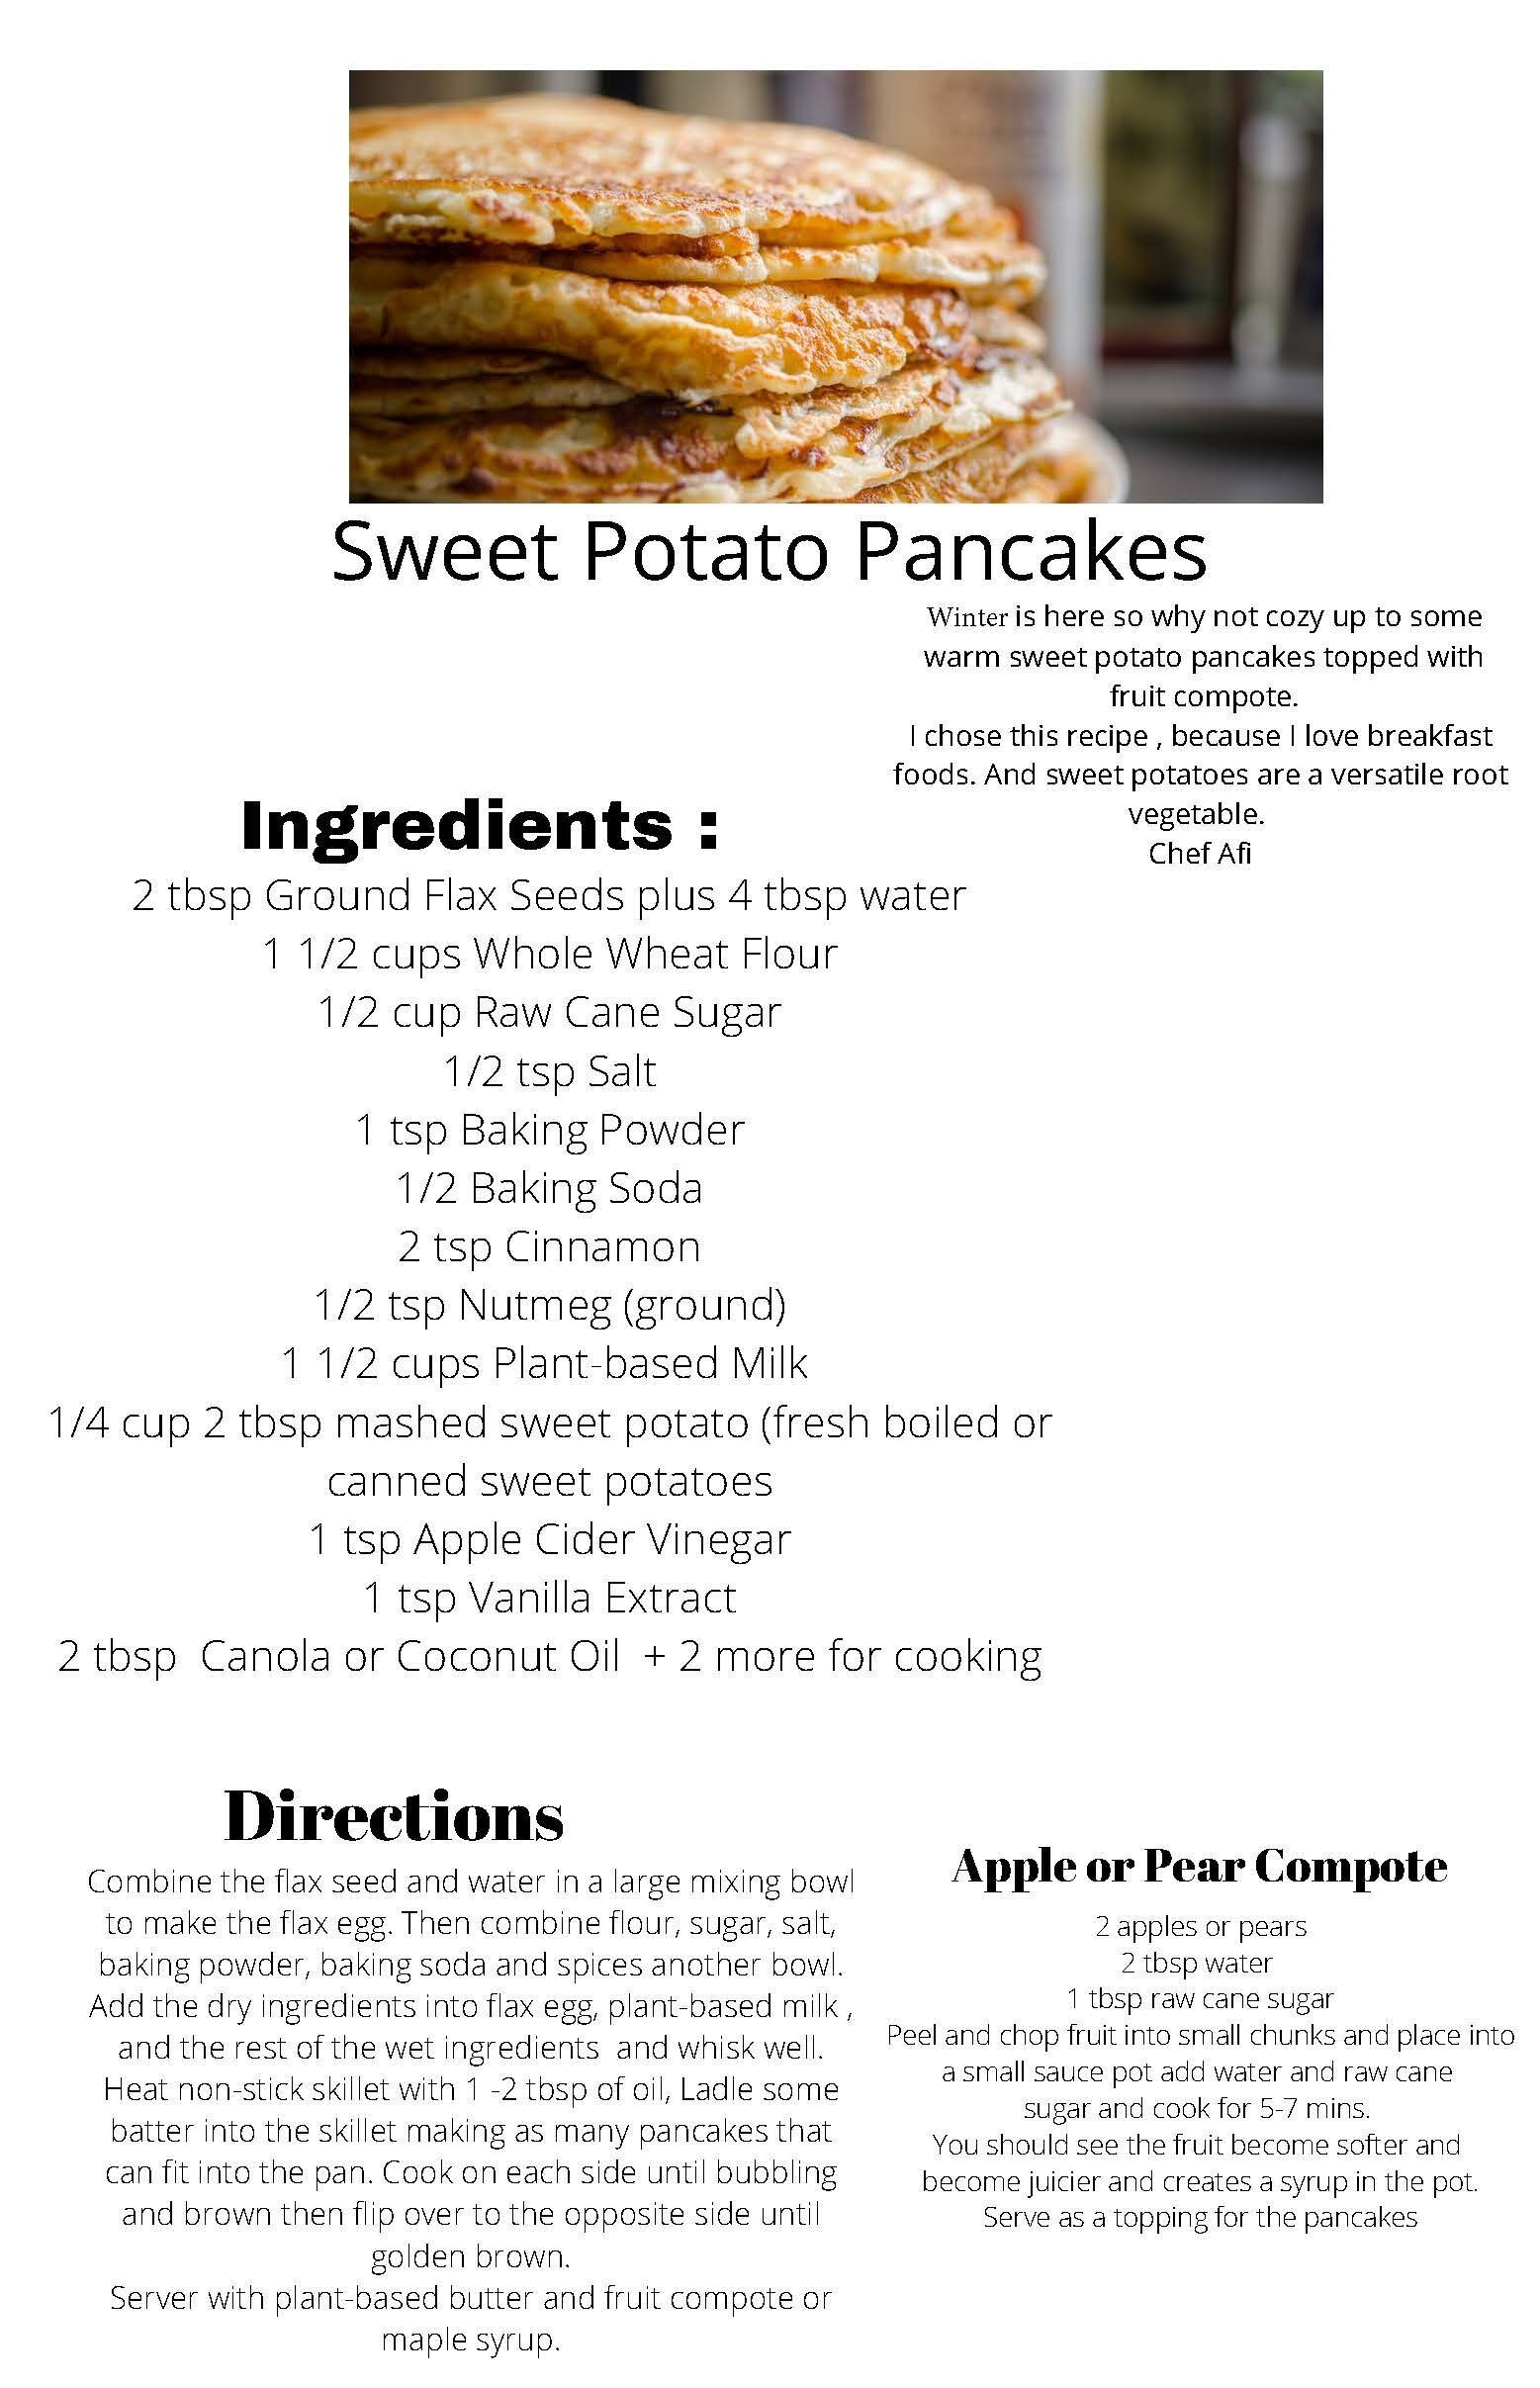 Family Fun in the Kitchen: Sweet Potato Pancakes